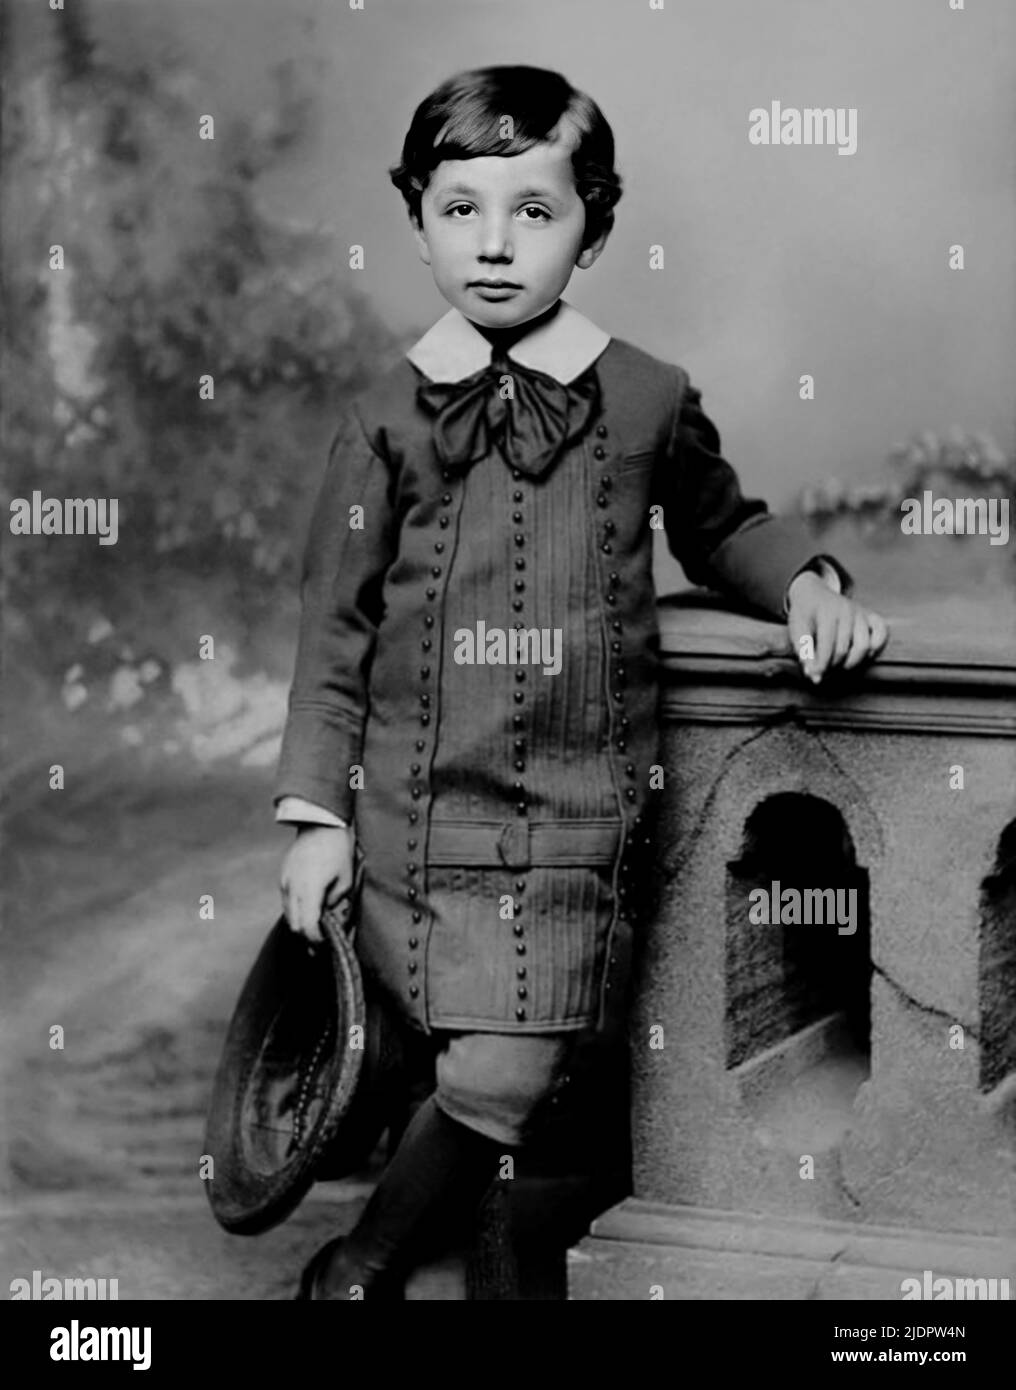 1884 , DEUTSCHLAND : der gefeierte Genie-Wissenschaftler und Physiker ALBERT EINSTEIN ( 1879 - 1955? ) Als ein kleiner Junge im Alter von 5 Jahren war. Nobelpreis für Physik 1921 . Unbekannter Fotograf. - GENIO - PREMIO NOBEL per la FISICA - FISICO - SCIENZIATO - GESCHICHTE - FOTO STORICHE - personalità da bambino Bambini da giovane - Persönlichkeiten der Persönlichkeit als jung - INFANZIA - KINDHEIT - BAMBINO - BAMBINI - KINDER - KIND - Fiocco - Bogen -- colletto - Kragen - PORTRÄT - RITRATTO --- ARCHIVIO GBB Stockfoto